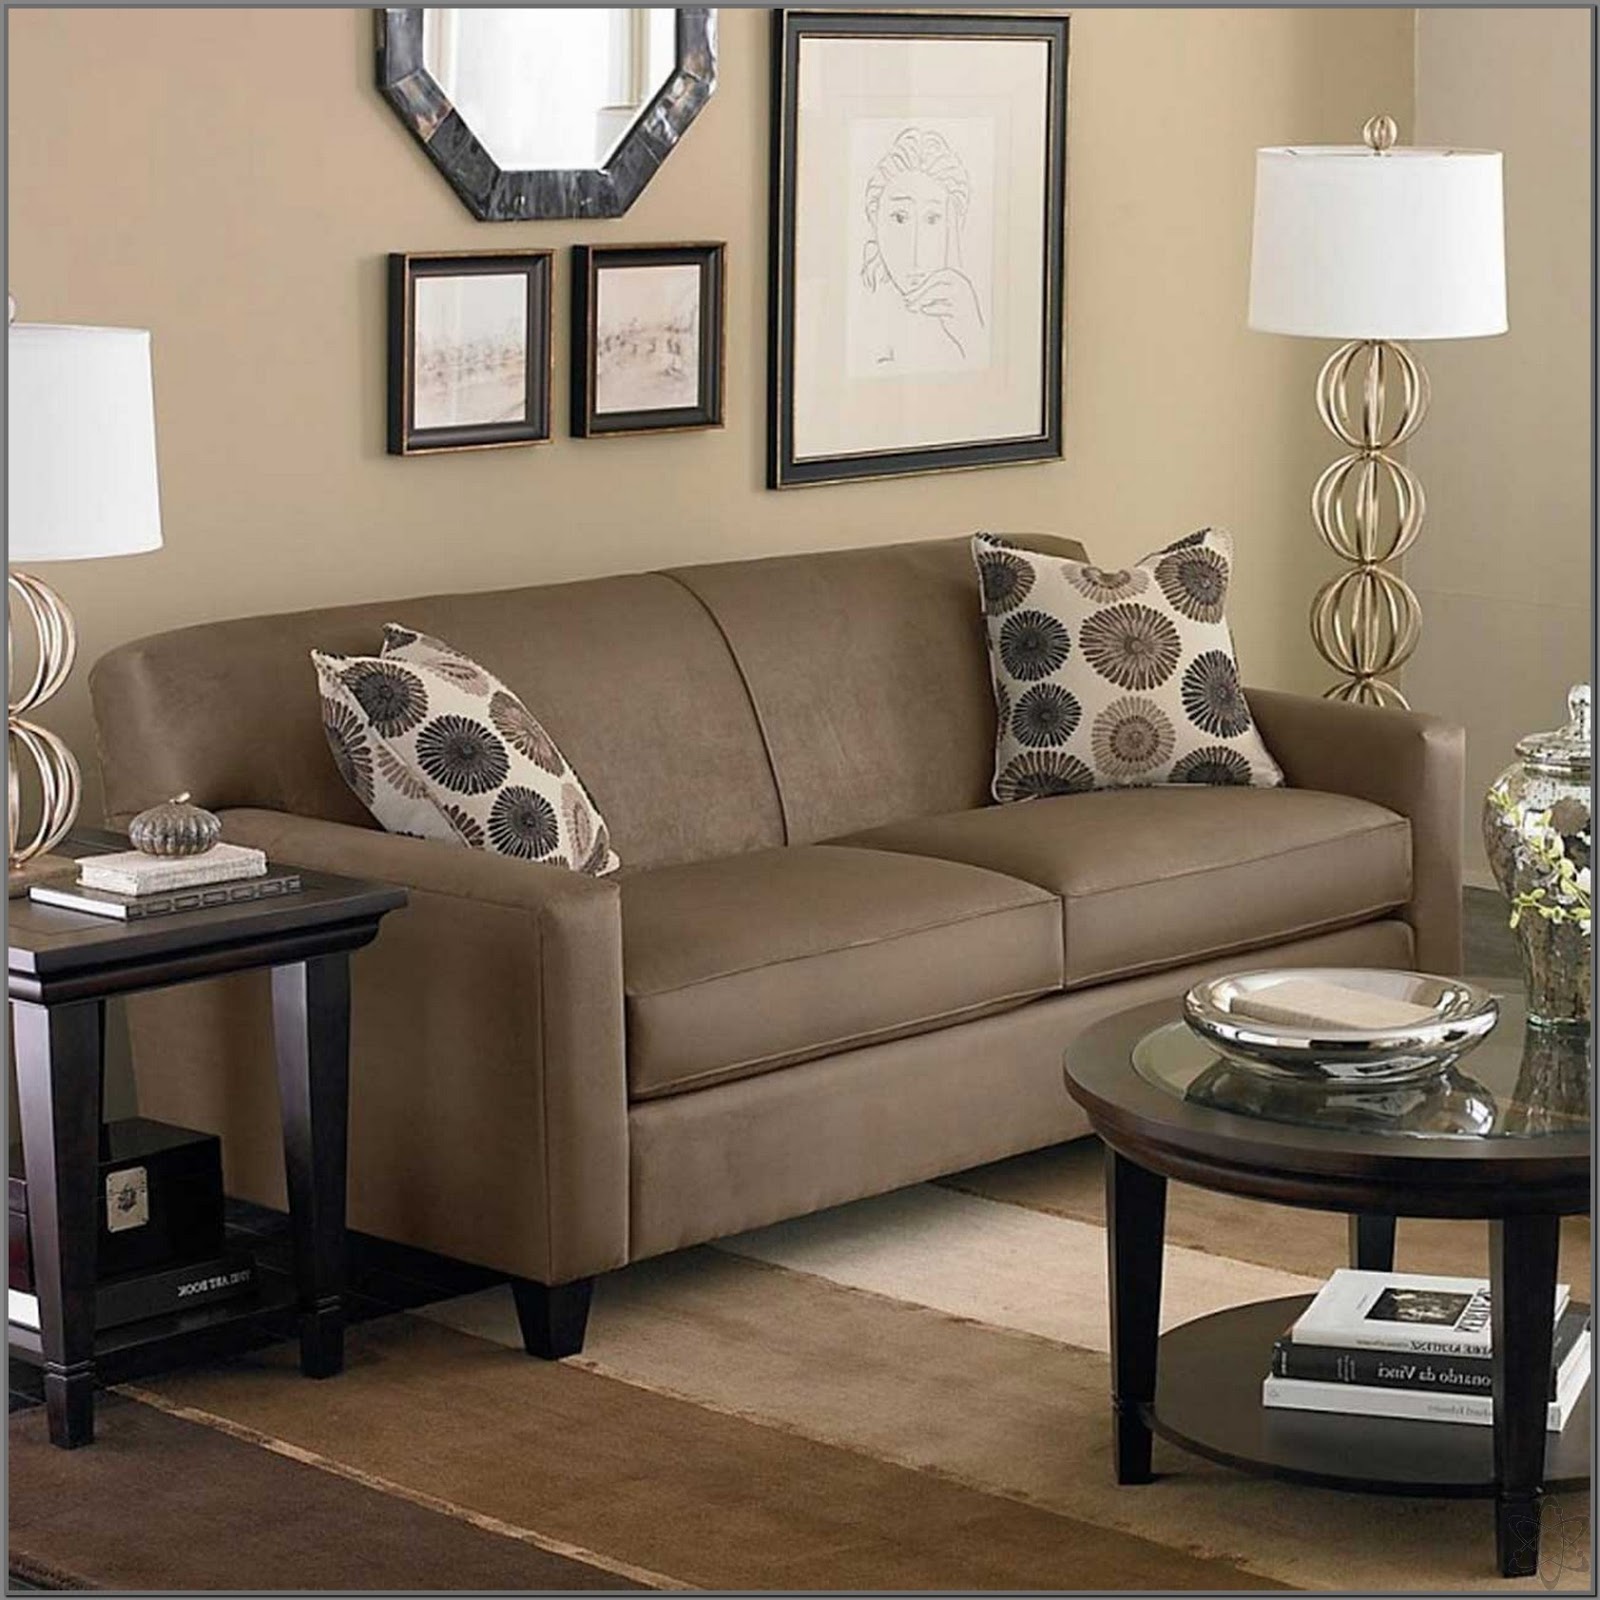 Ruang Tamu Sederhana Dengan Sofa Minimalis REFERENSI RUMAH